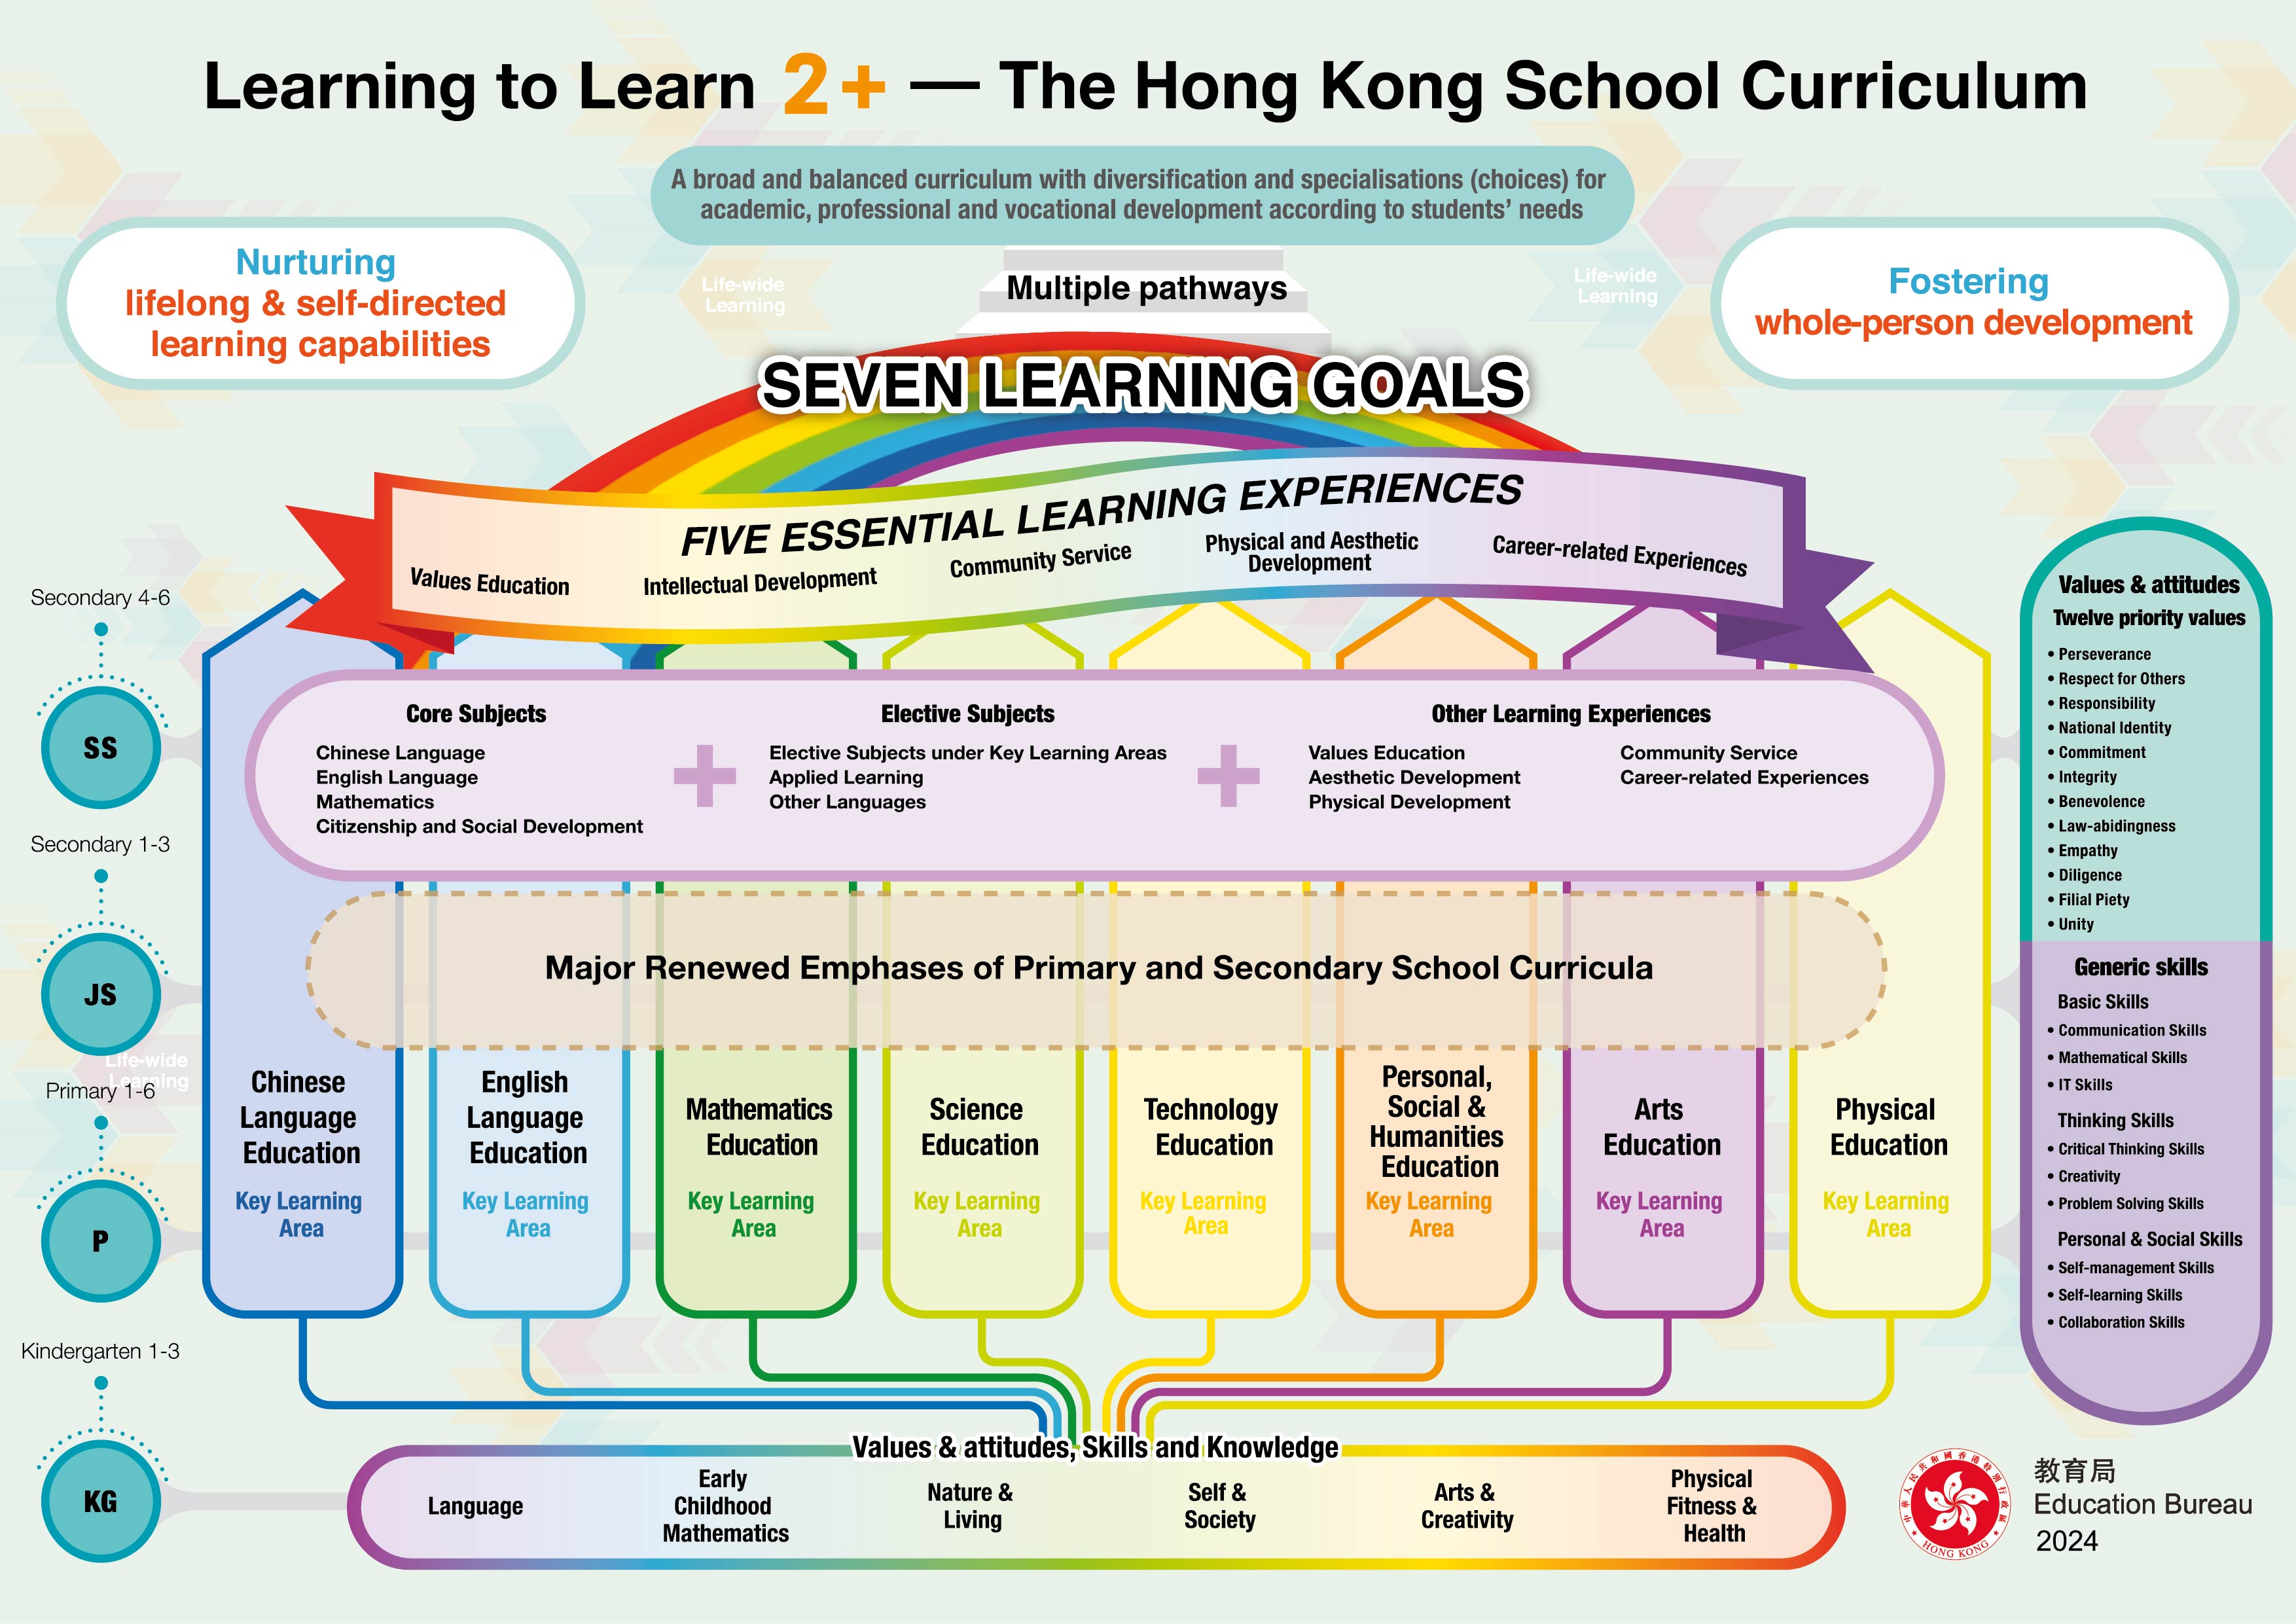 The School Curriculum Framework